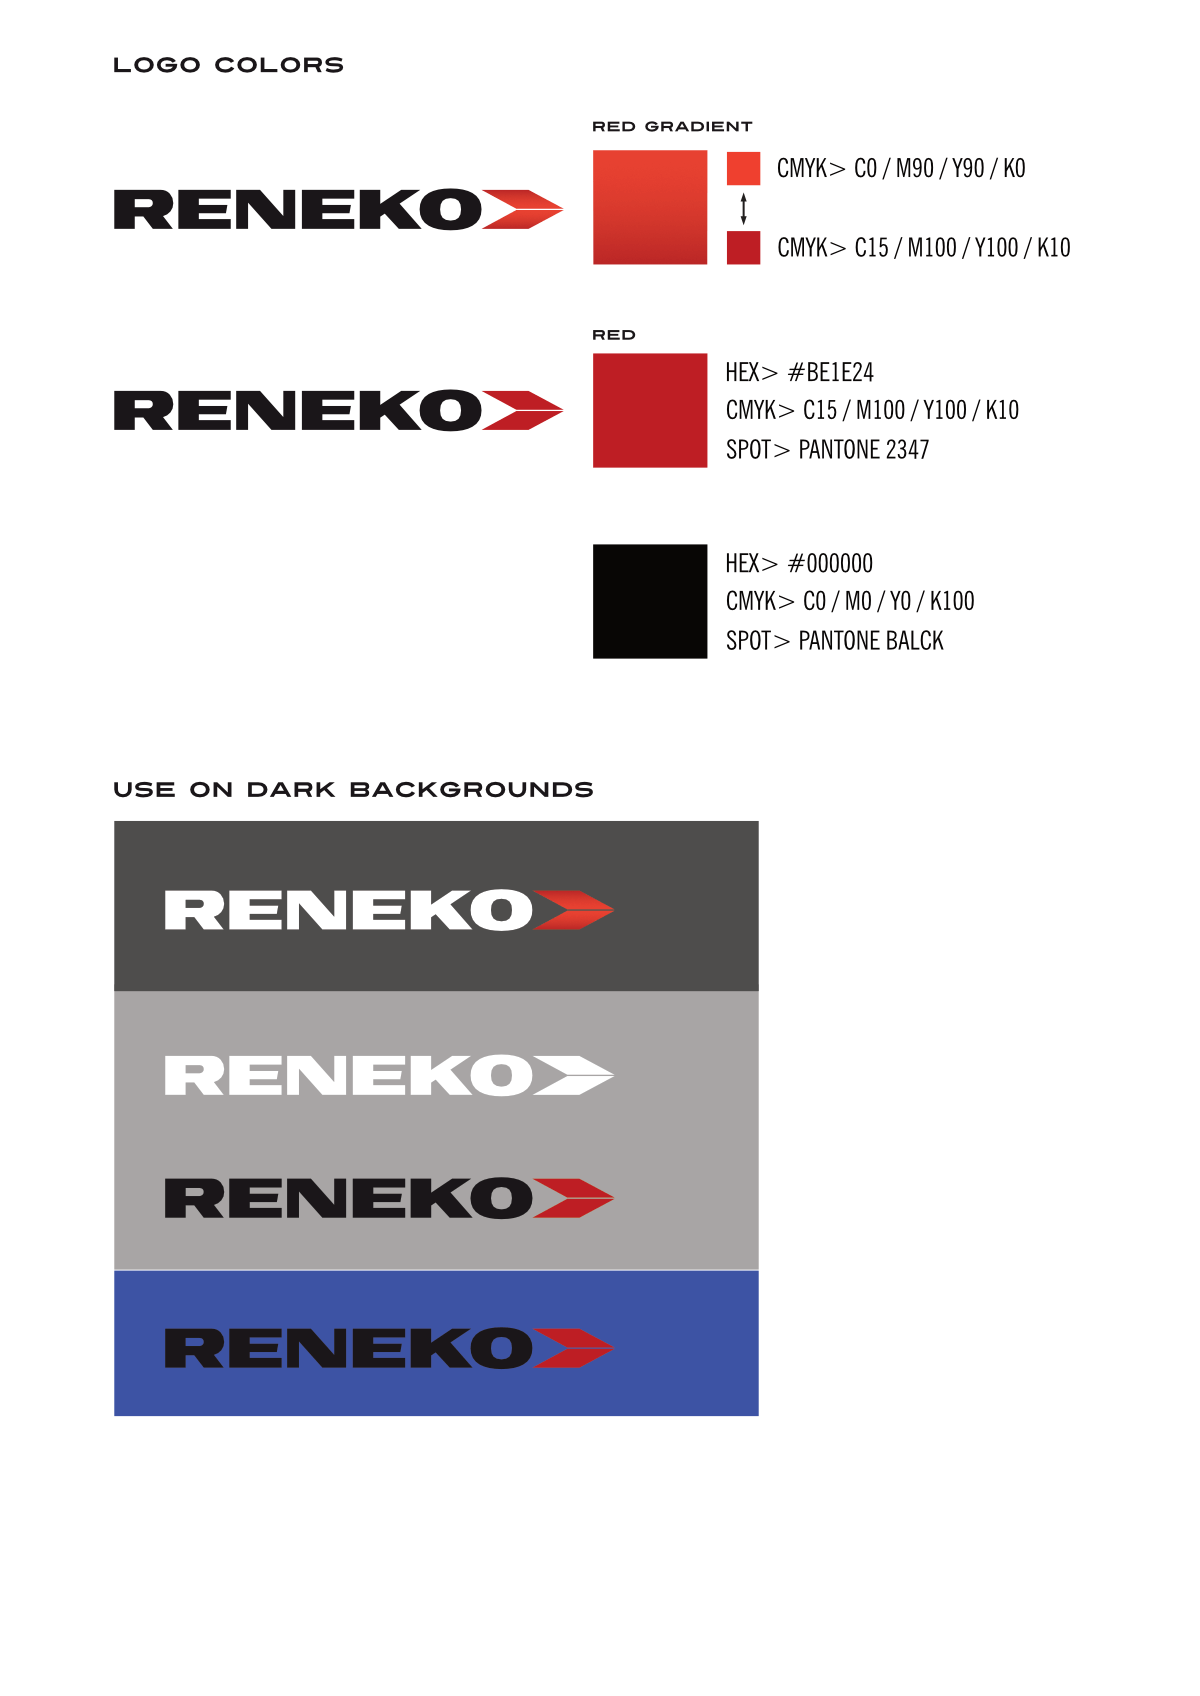 reneko rebranding logo disain big3 1